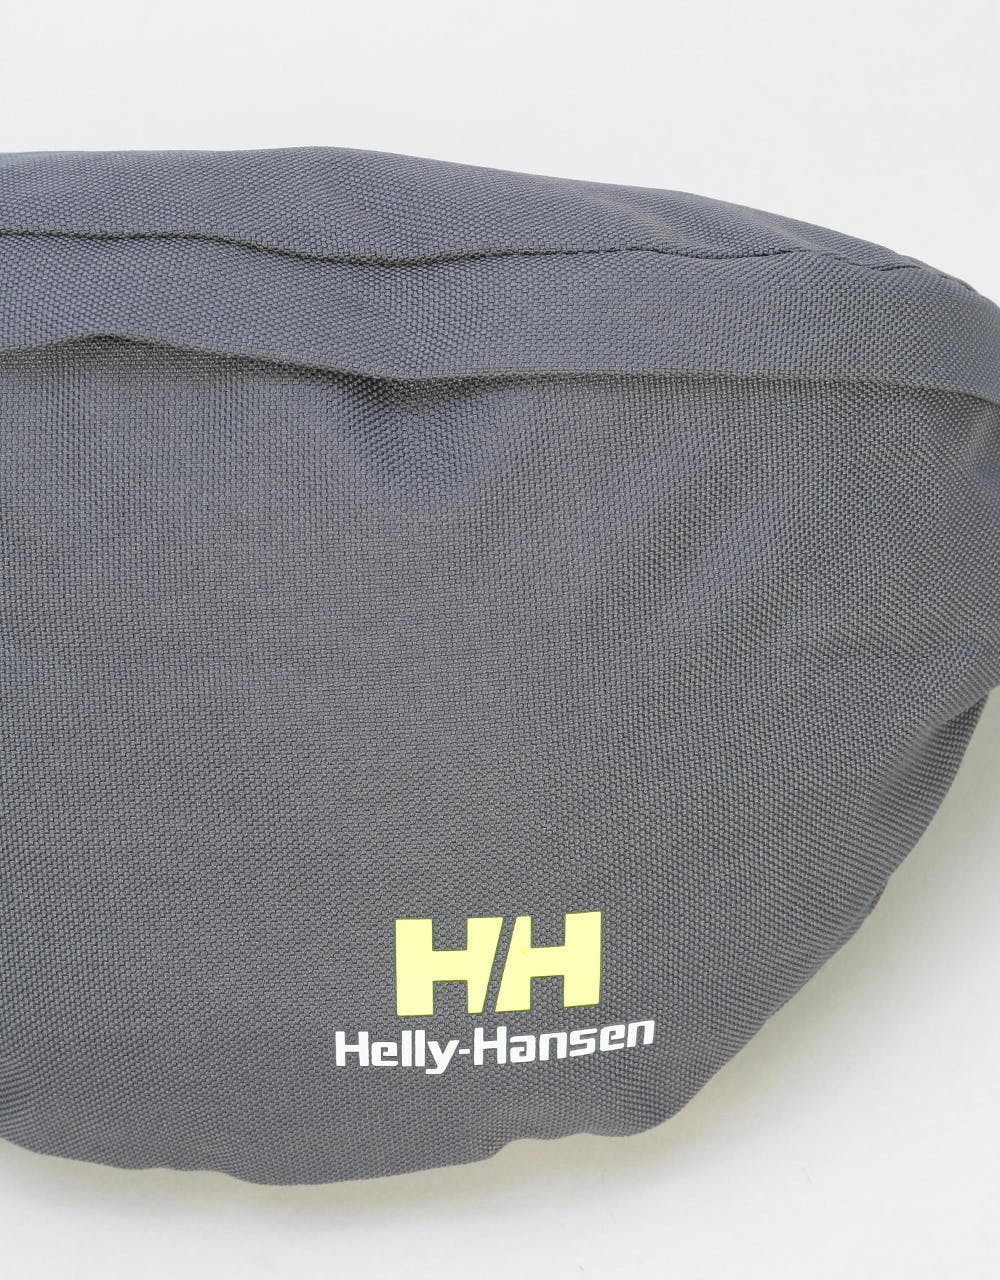 Helly Hansen Logo Bum Bag - Charcoal